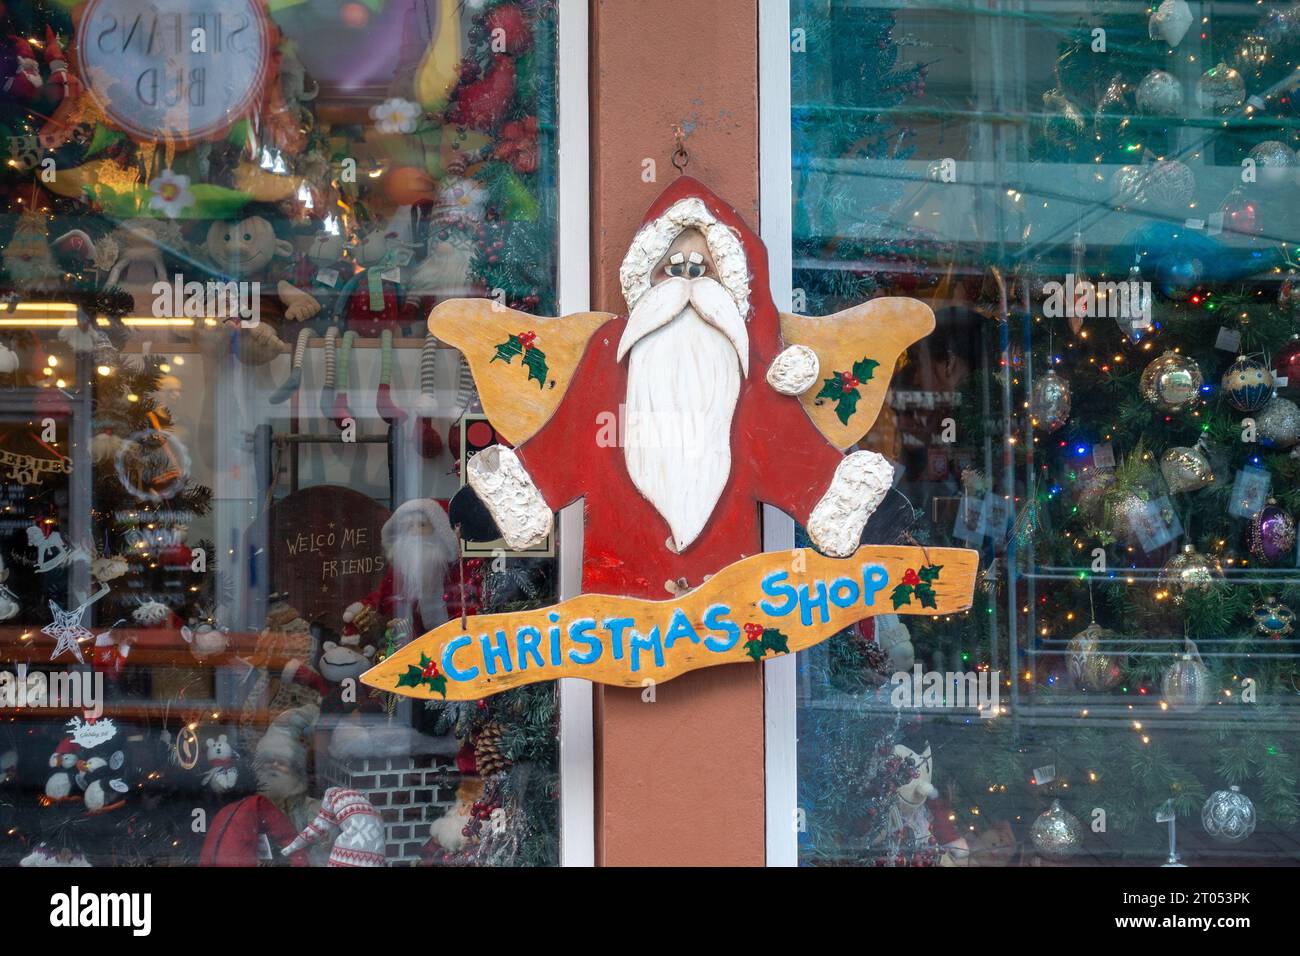 Weihnachtsgeschäft In Reykjavik Island Heißt Little Christams Shop, Retail Xmas Store In Downtown Reykjavik Tourist Shop Stockfoto